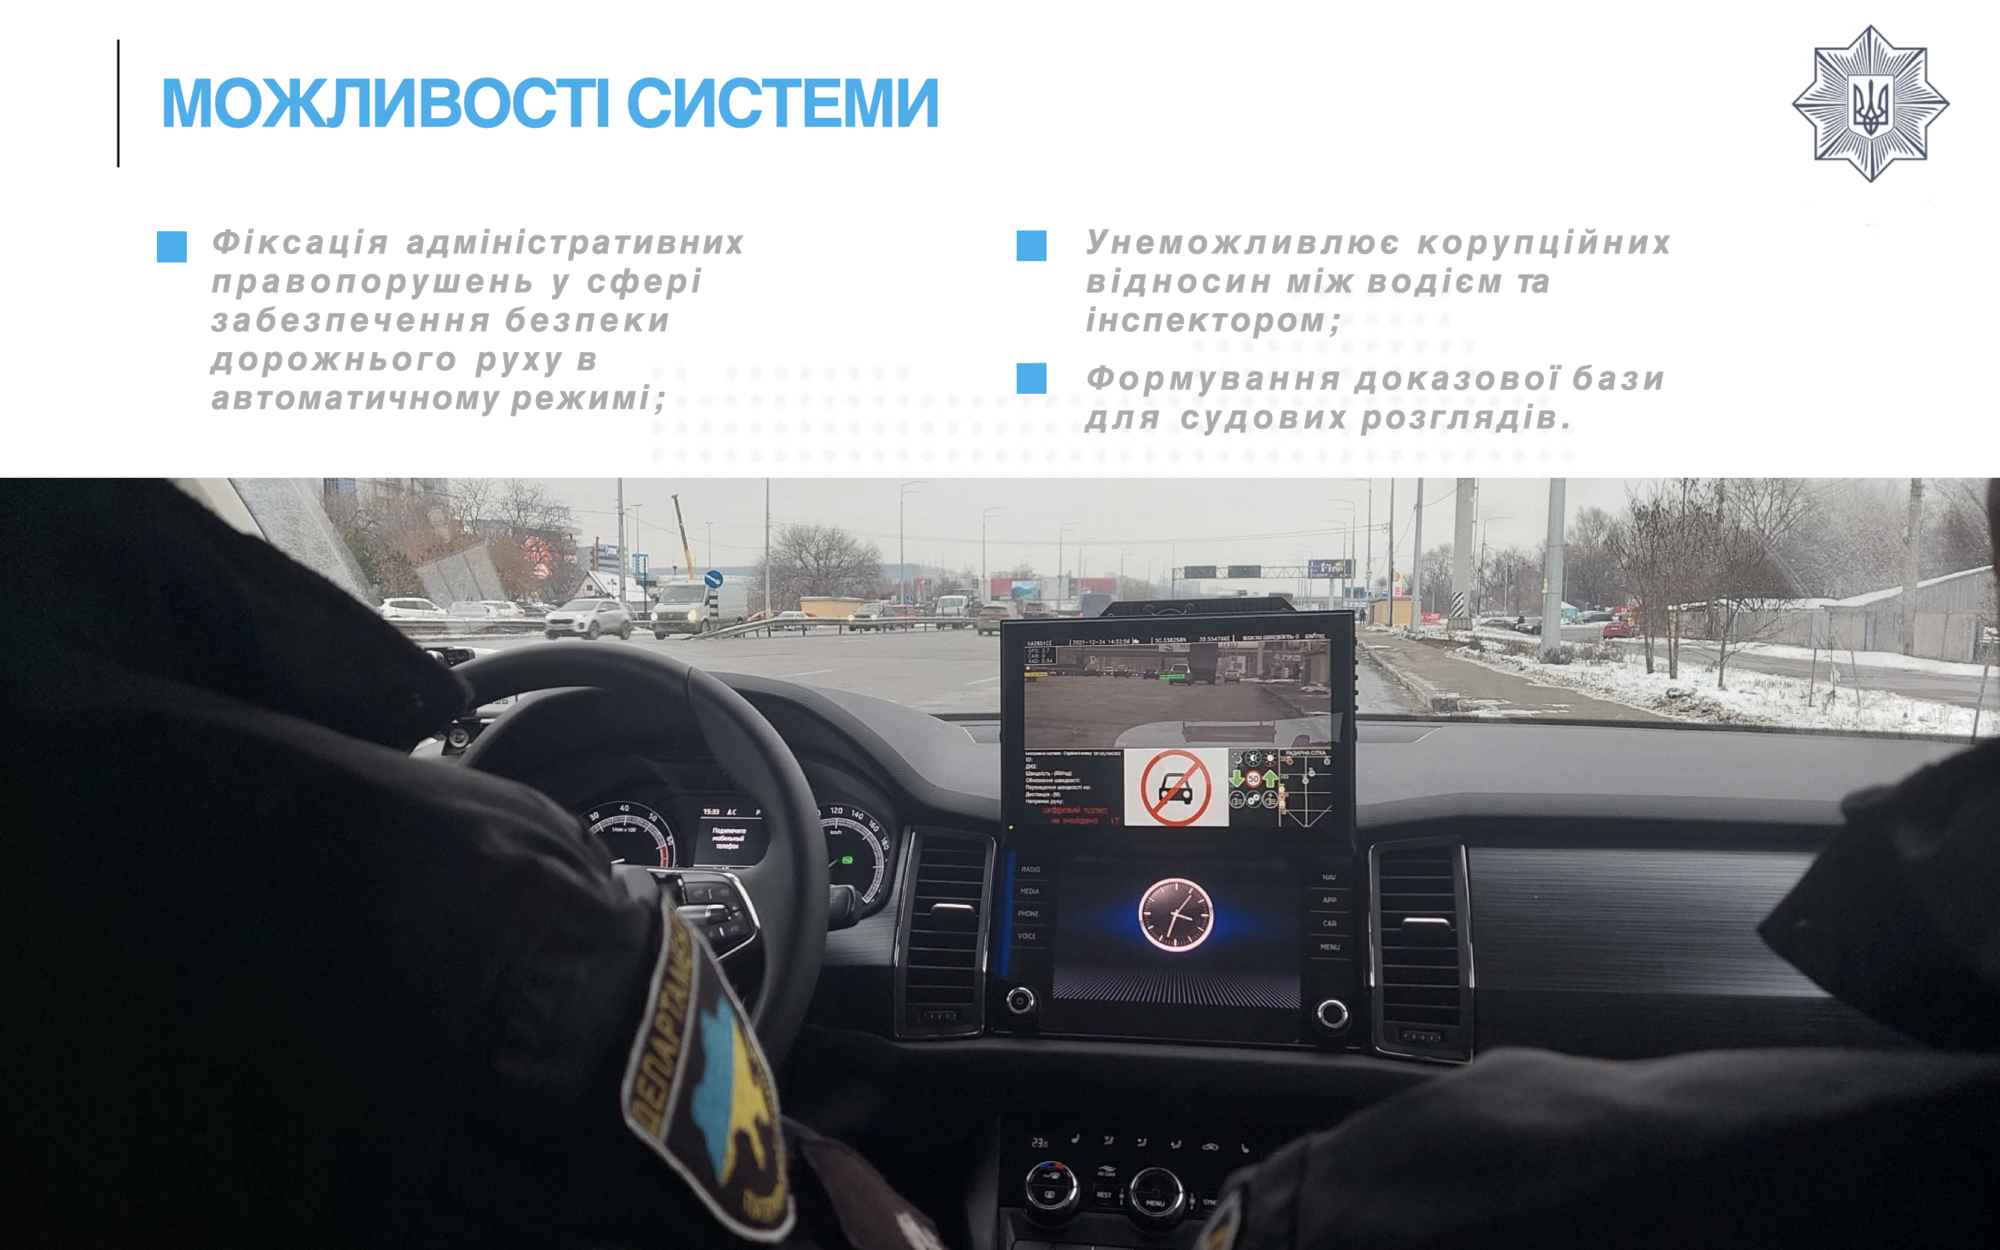 В Украине на дороги выехали авто-"фантомы" полиции: как они устроены и какие нарушения будут фиксировать. Видео